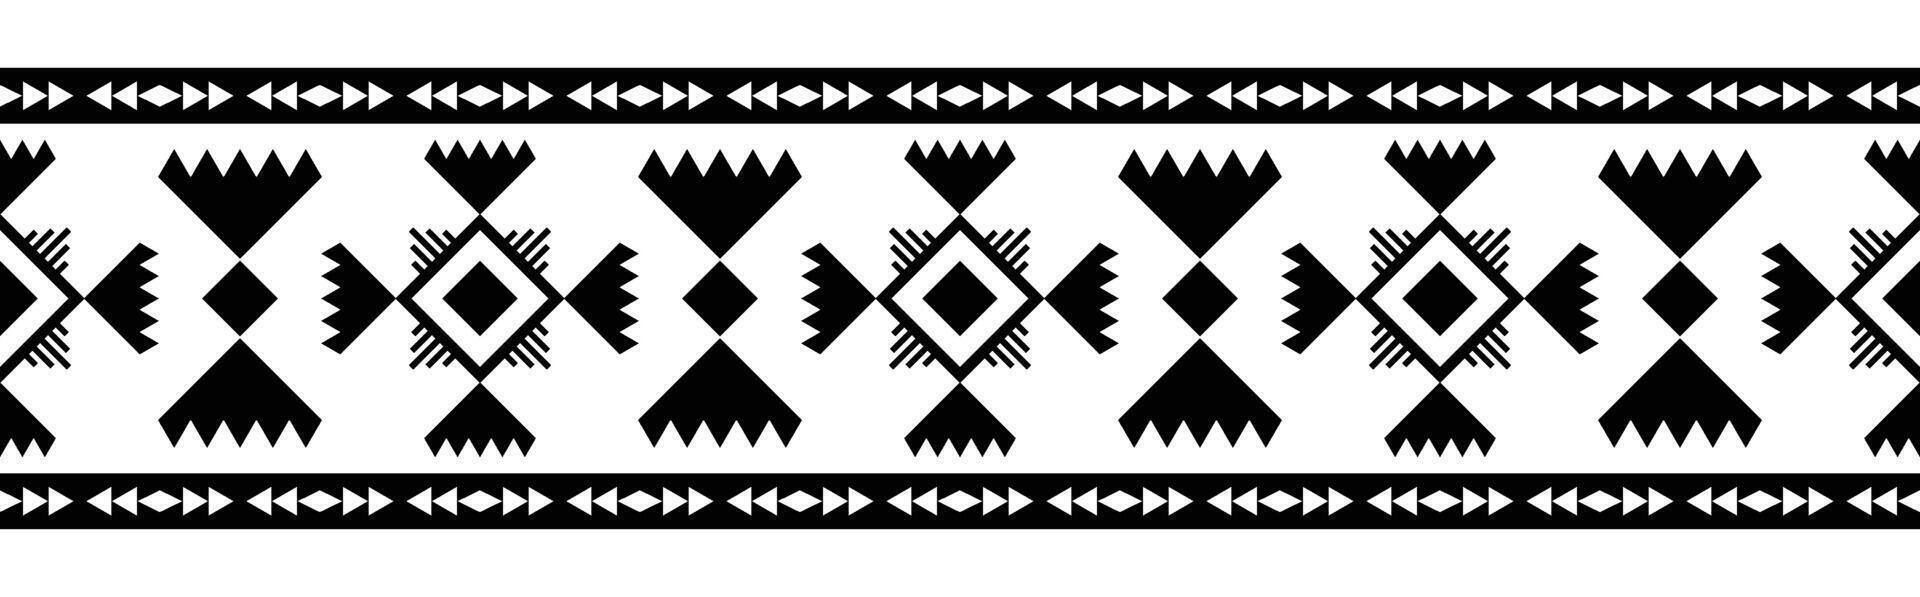 étnico frontera ornamento. geométrico étnico oriental sin costura modelo. raya vector ilustración. nativo americano mexicano africano indio tribal estilo. diseño borde, textil, tela, ropa, alfombra.